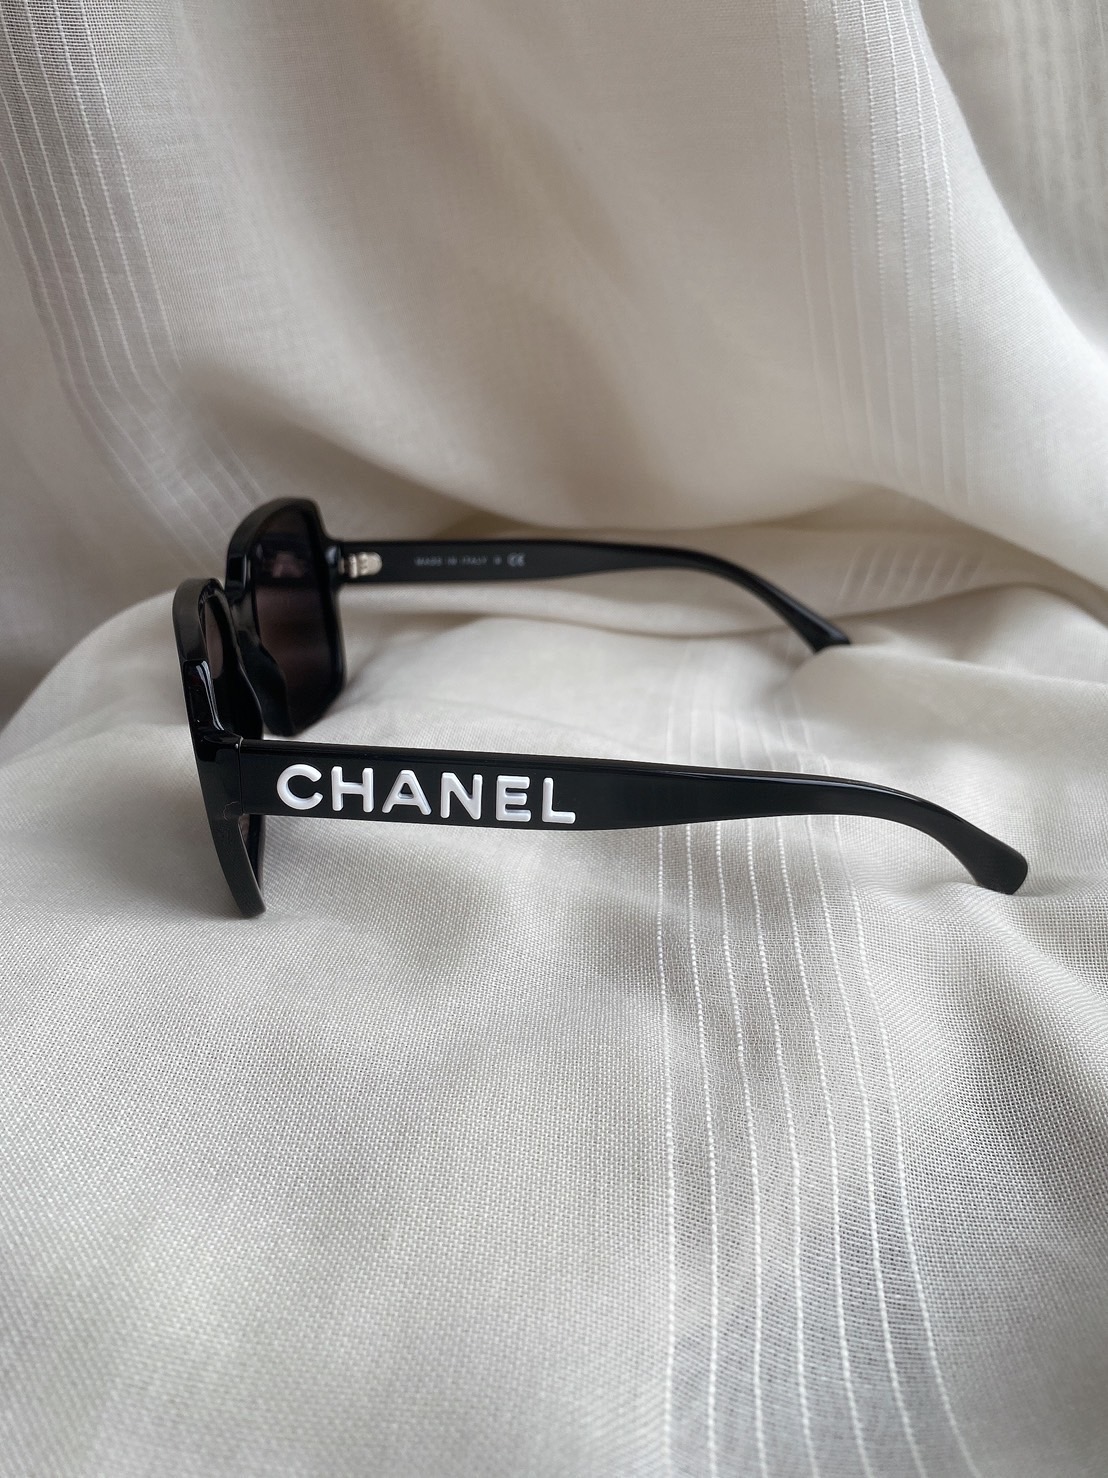 Chanel Sunglasses Square Sunglasses CH5408 1026/S4 56